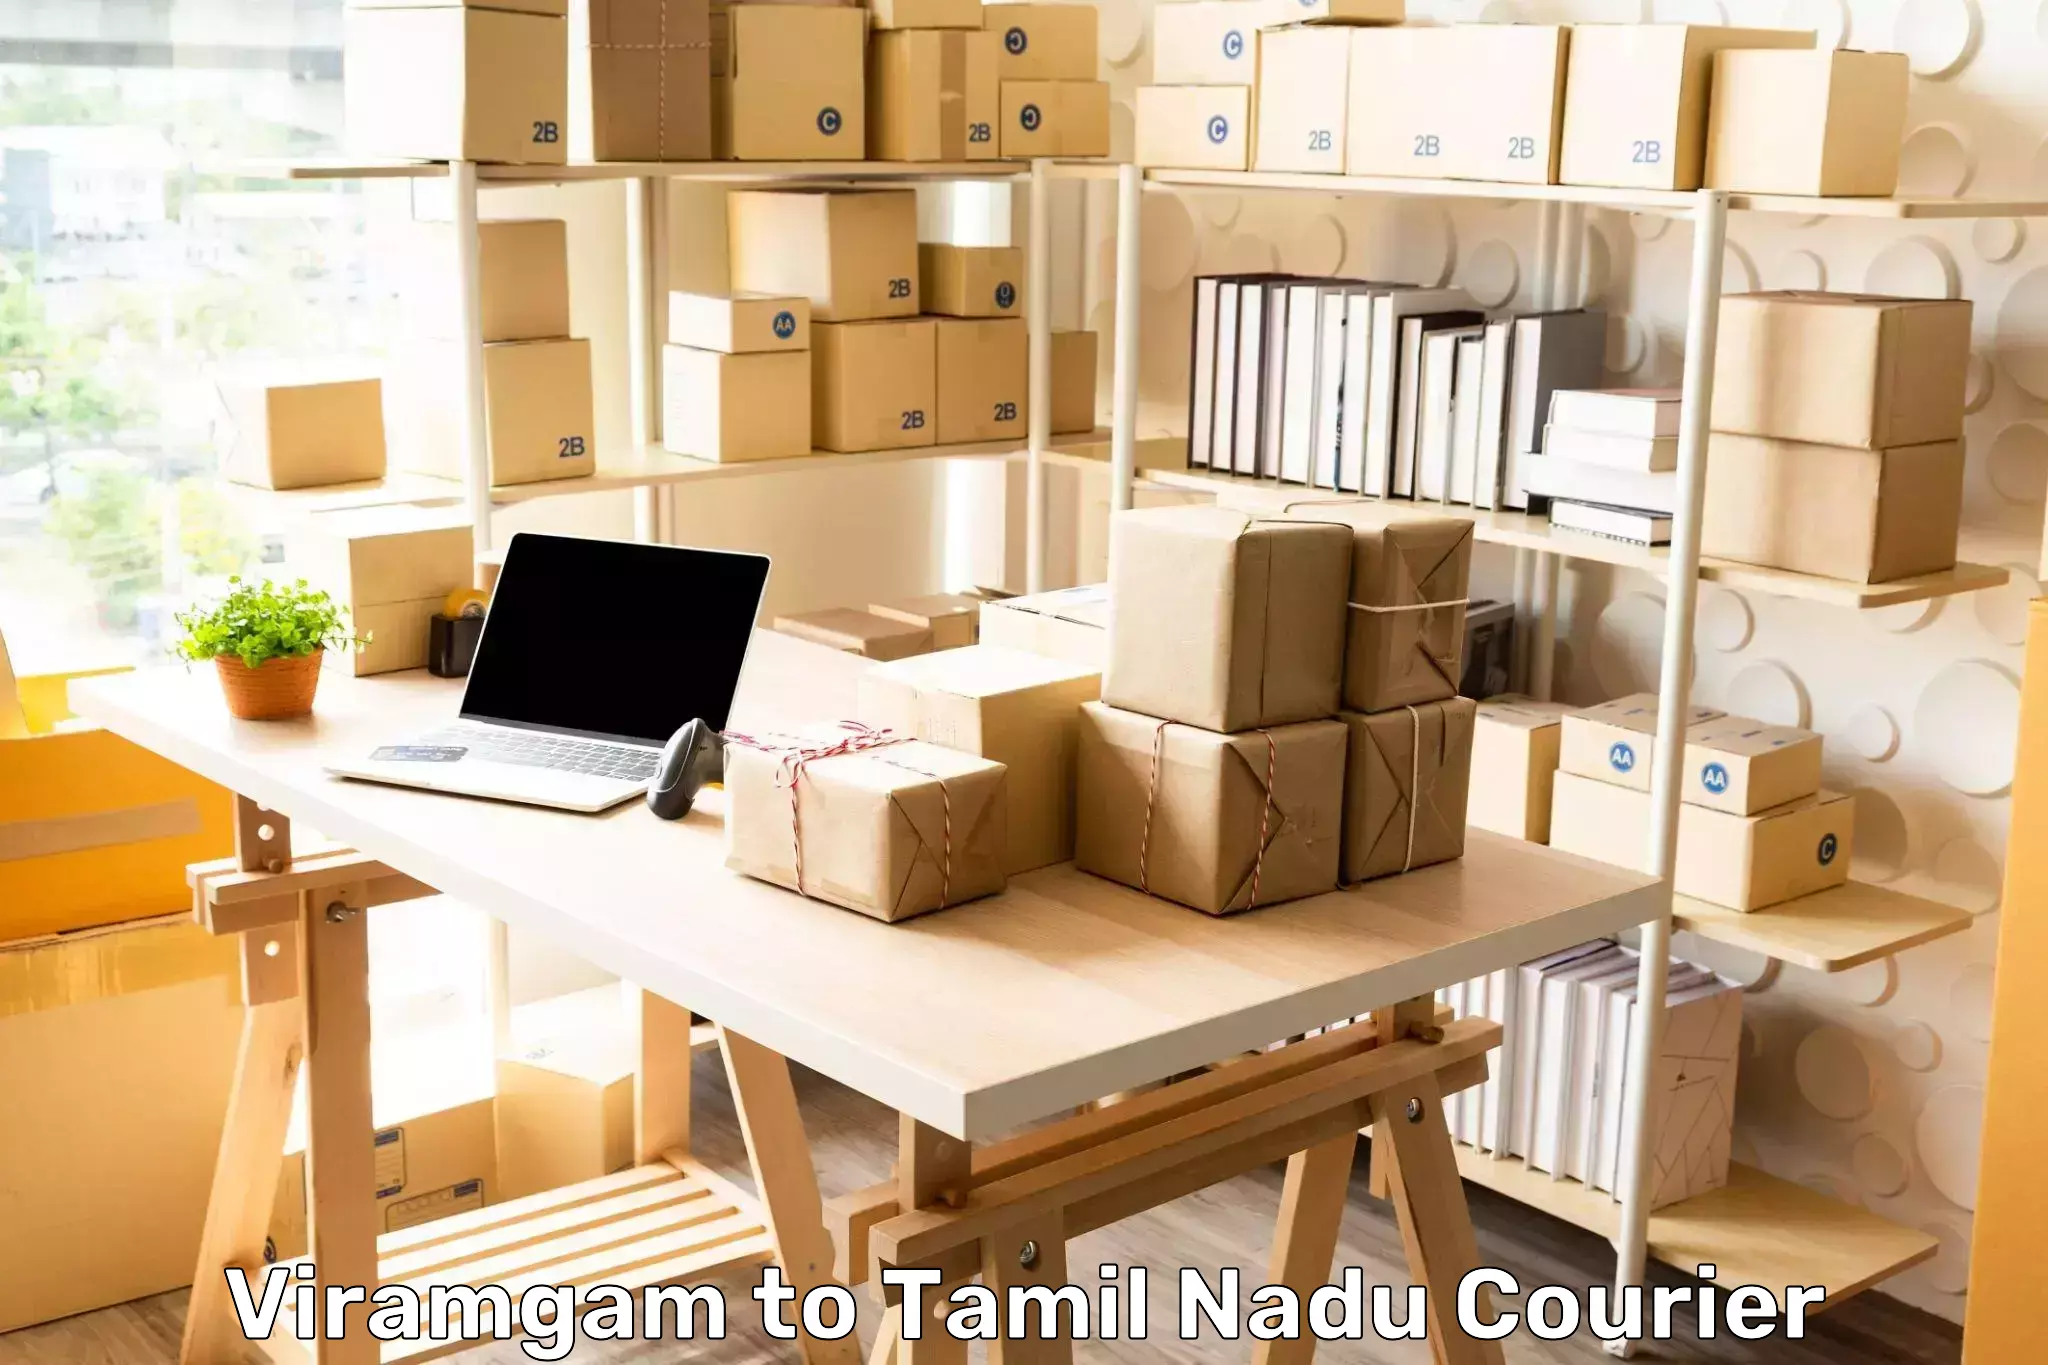 Premium courier services Viramgam to Thuckalay